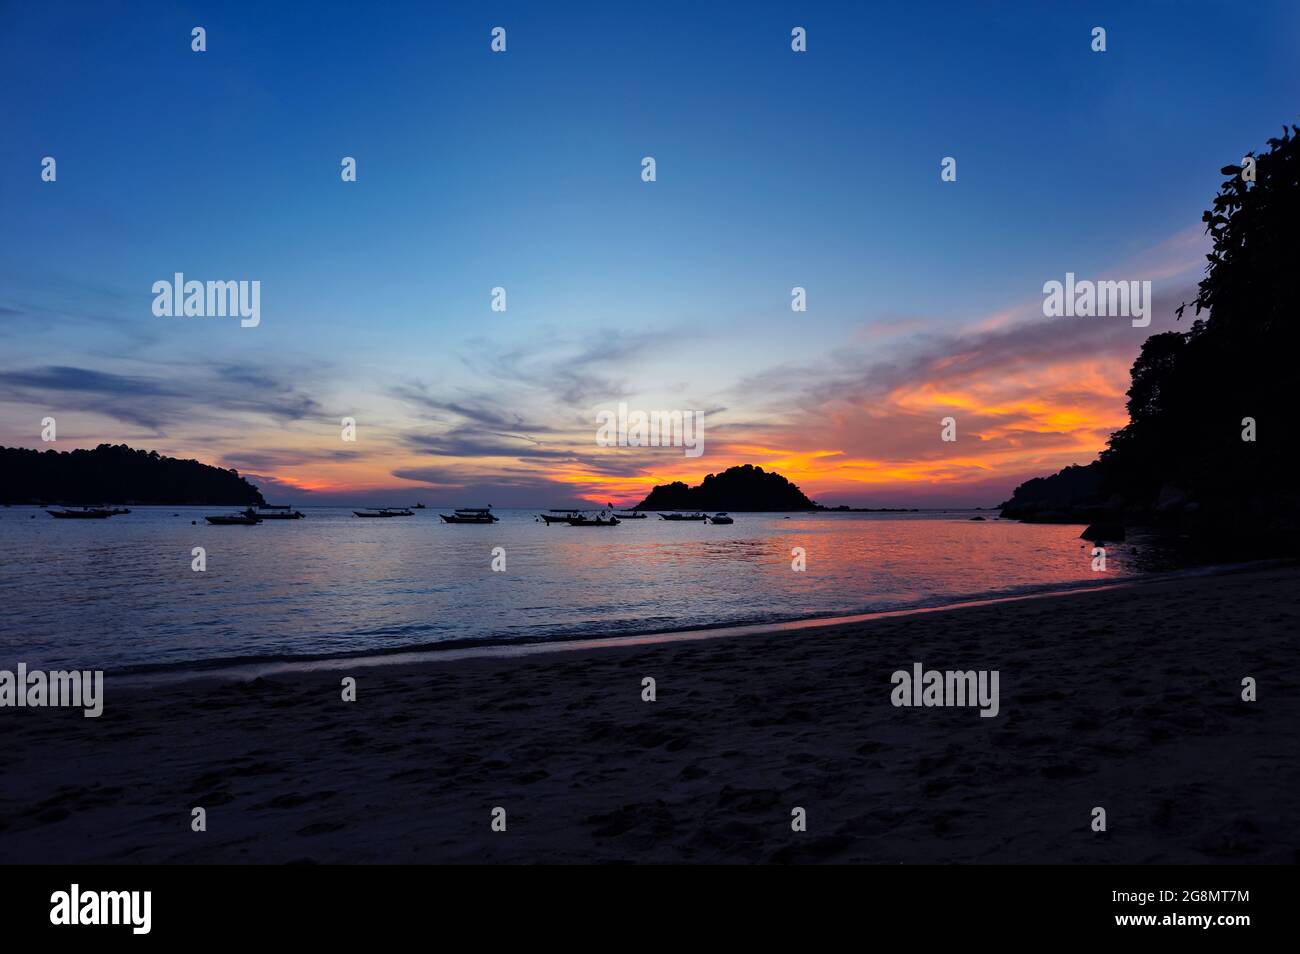 Blick auf den Sonnenuntergang an einem Strand auf der Insel Pangkor, Malaysia. Selektive Fokuspunkte. Das Bild kann aufgrund von schlechten Lichtquellen Körner enthalten Stockfoto